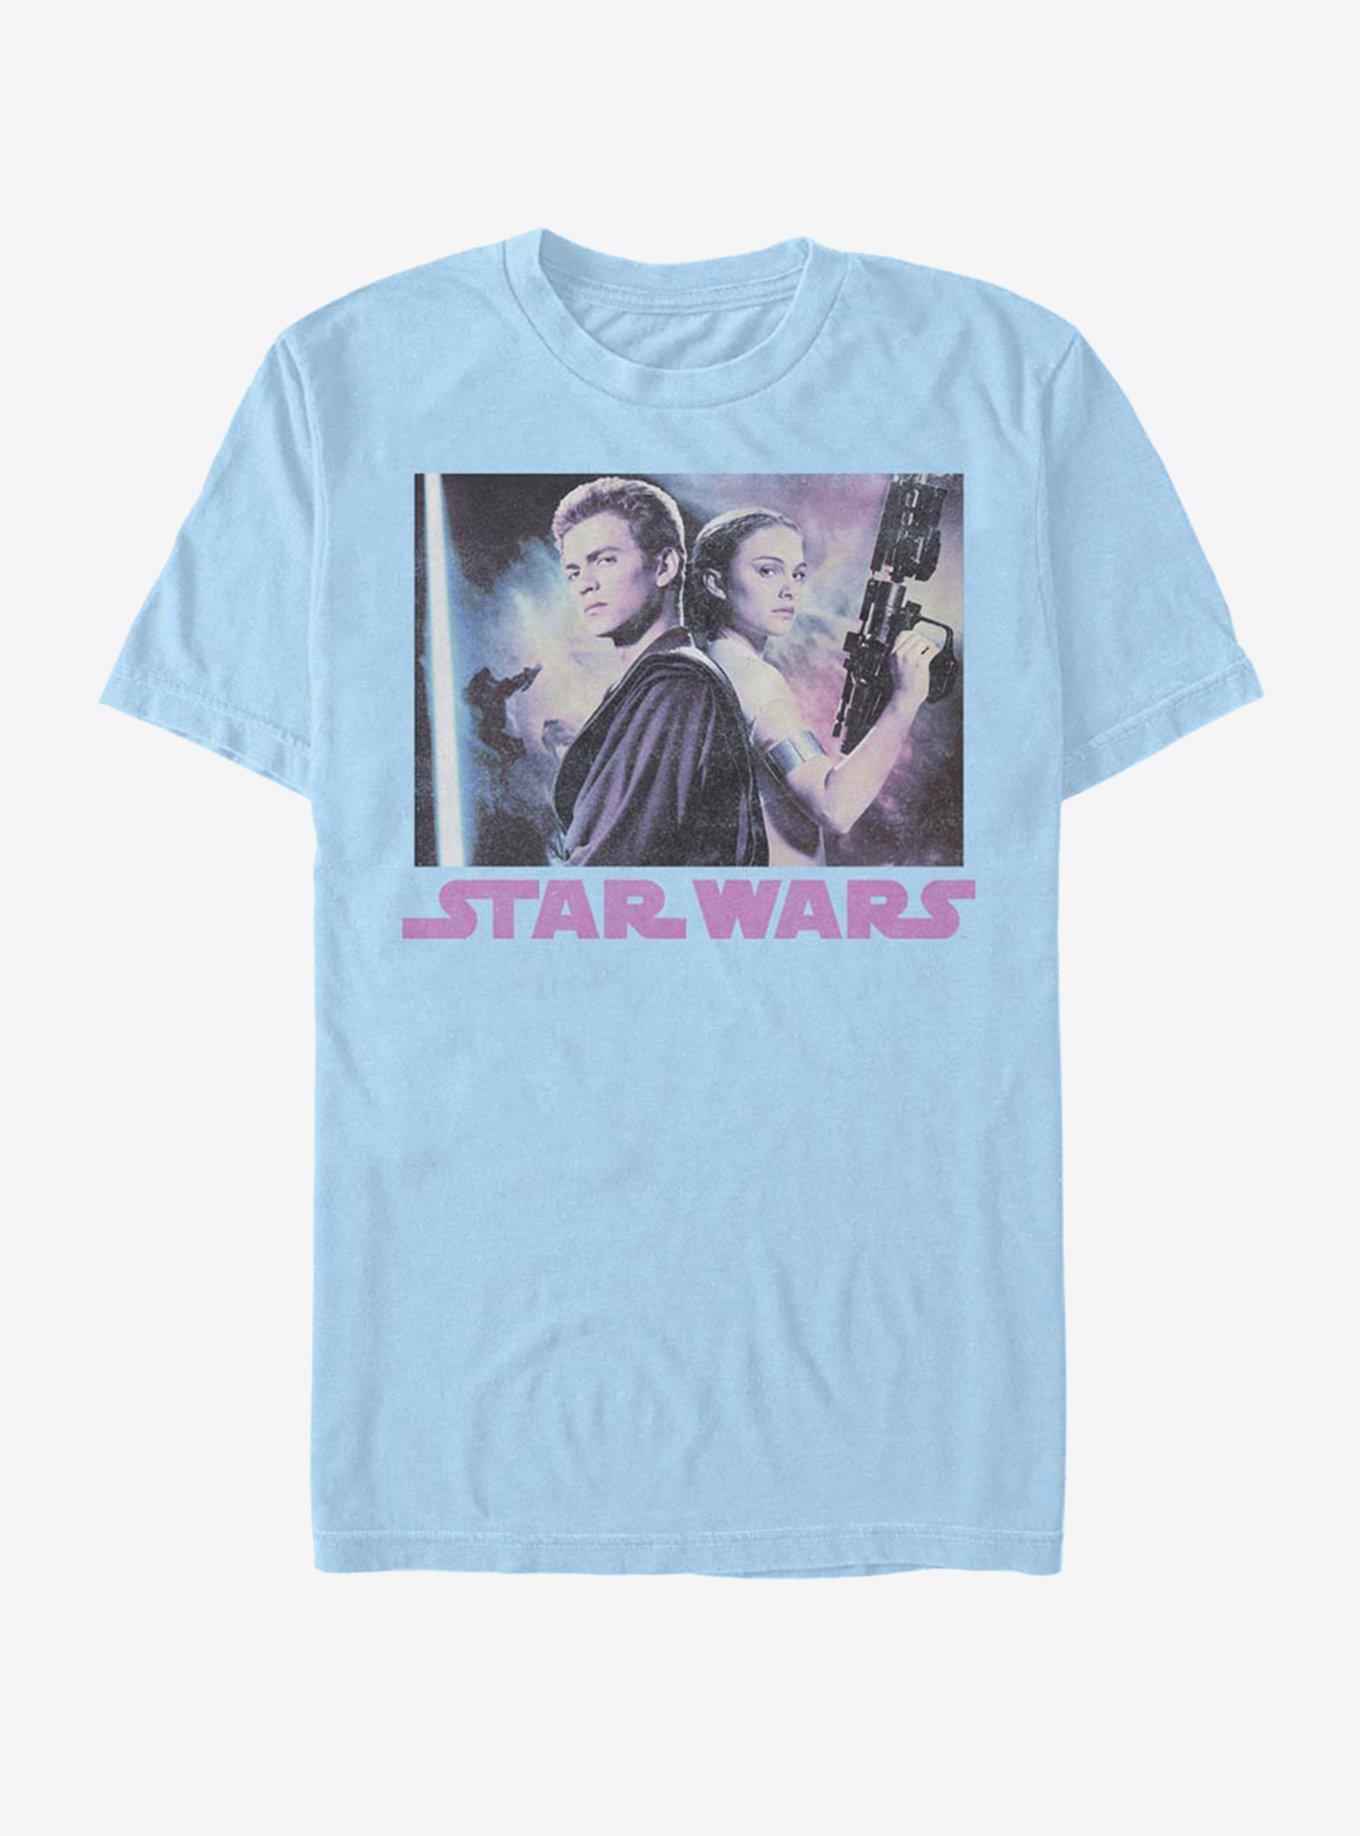 Star Wars Vintage Photo T-Shirt, LT BLUE, hi-res